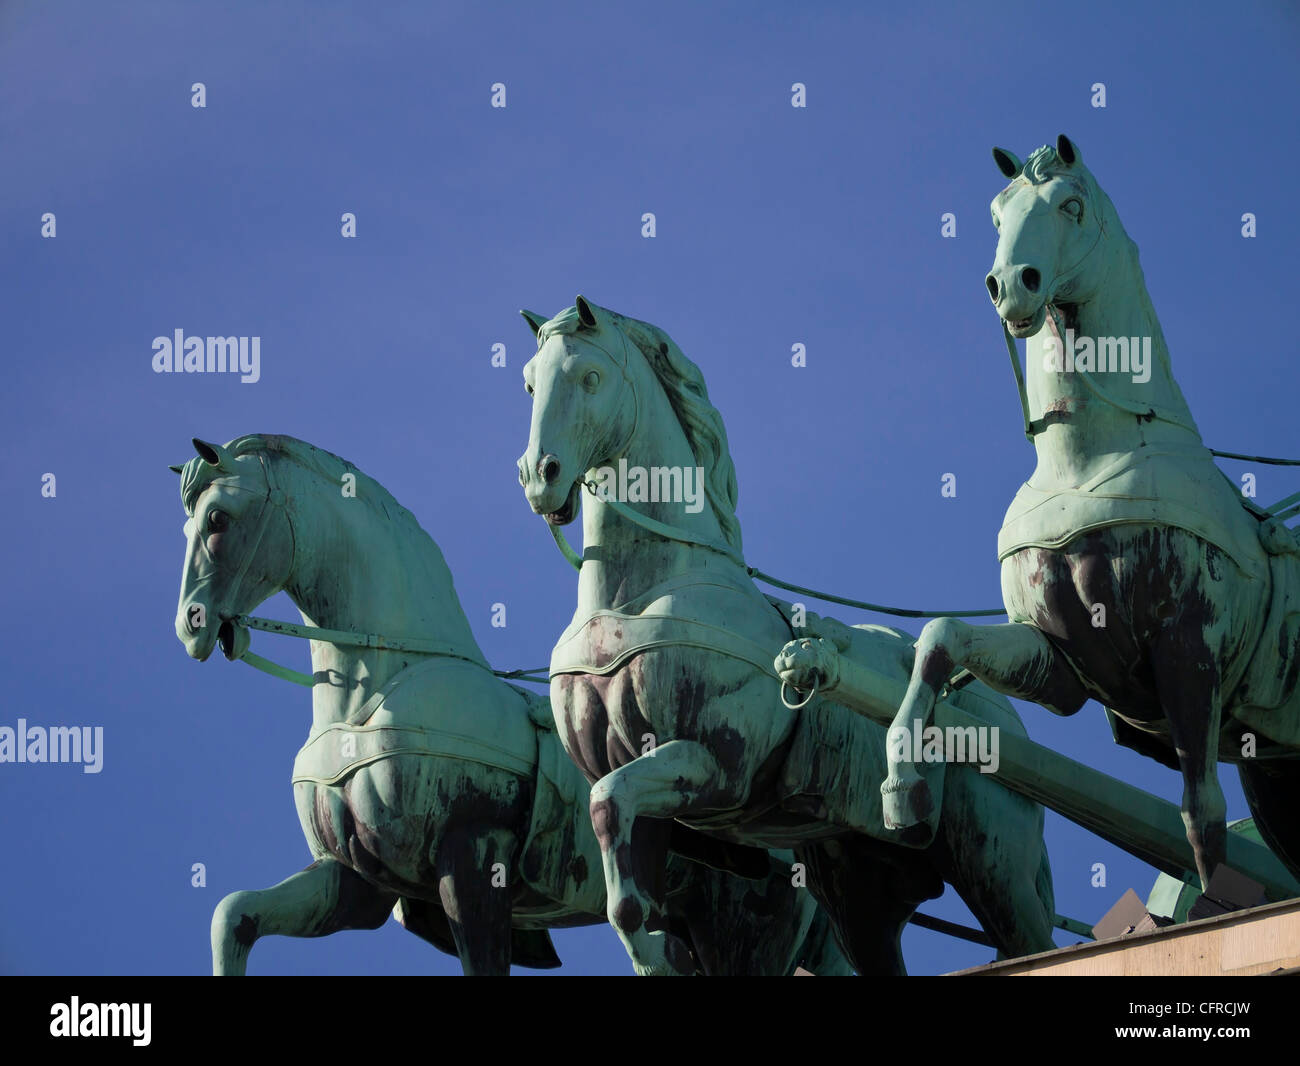 Dettaglio della quadriga (quattro carrozza a cavalli) statua sulla Porta di Brandeburgo, Berlino Germania. Foto Stock